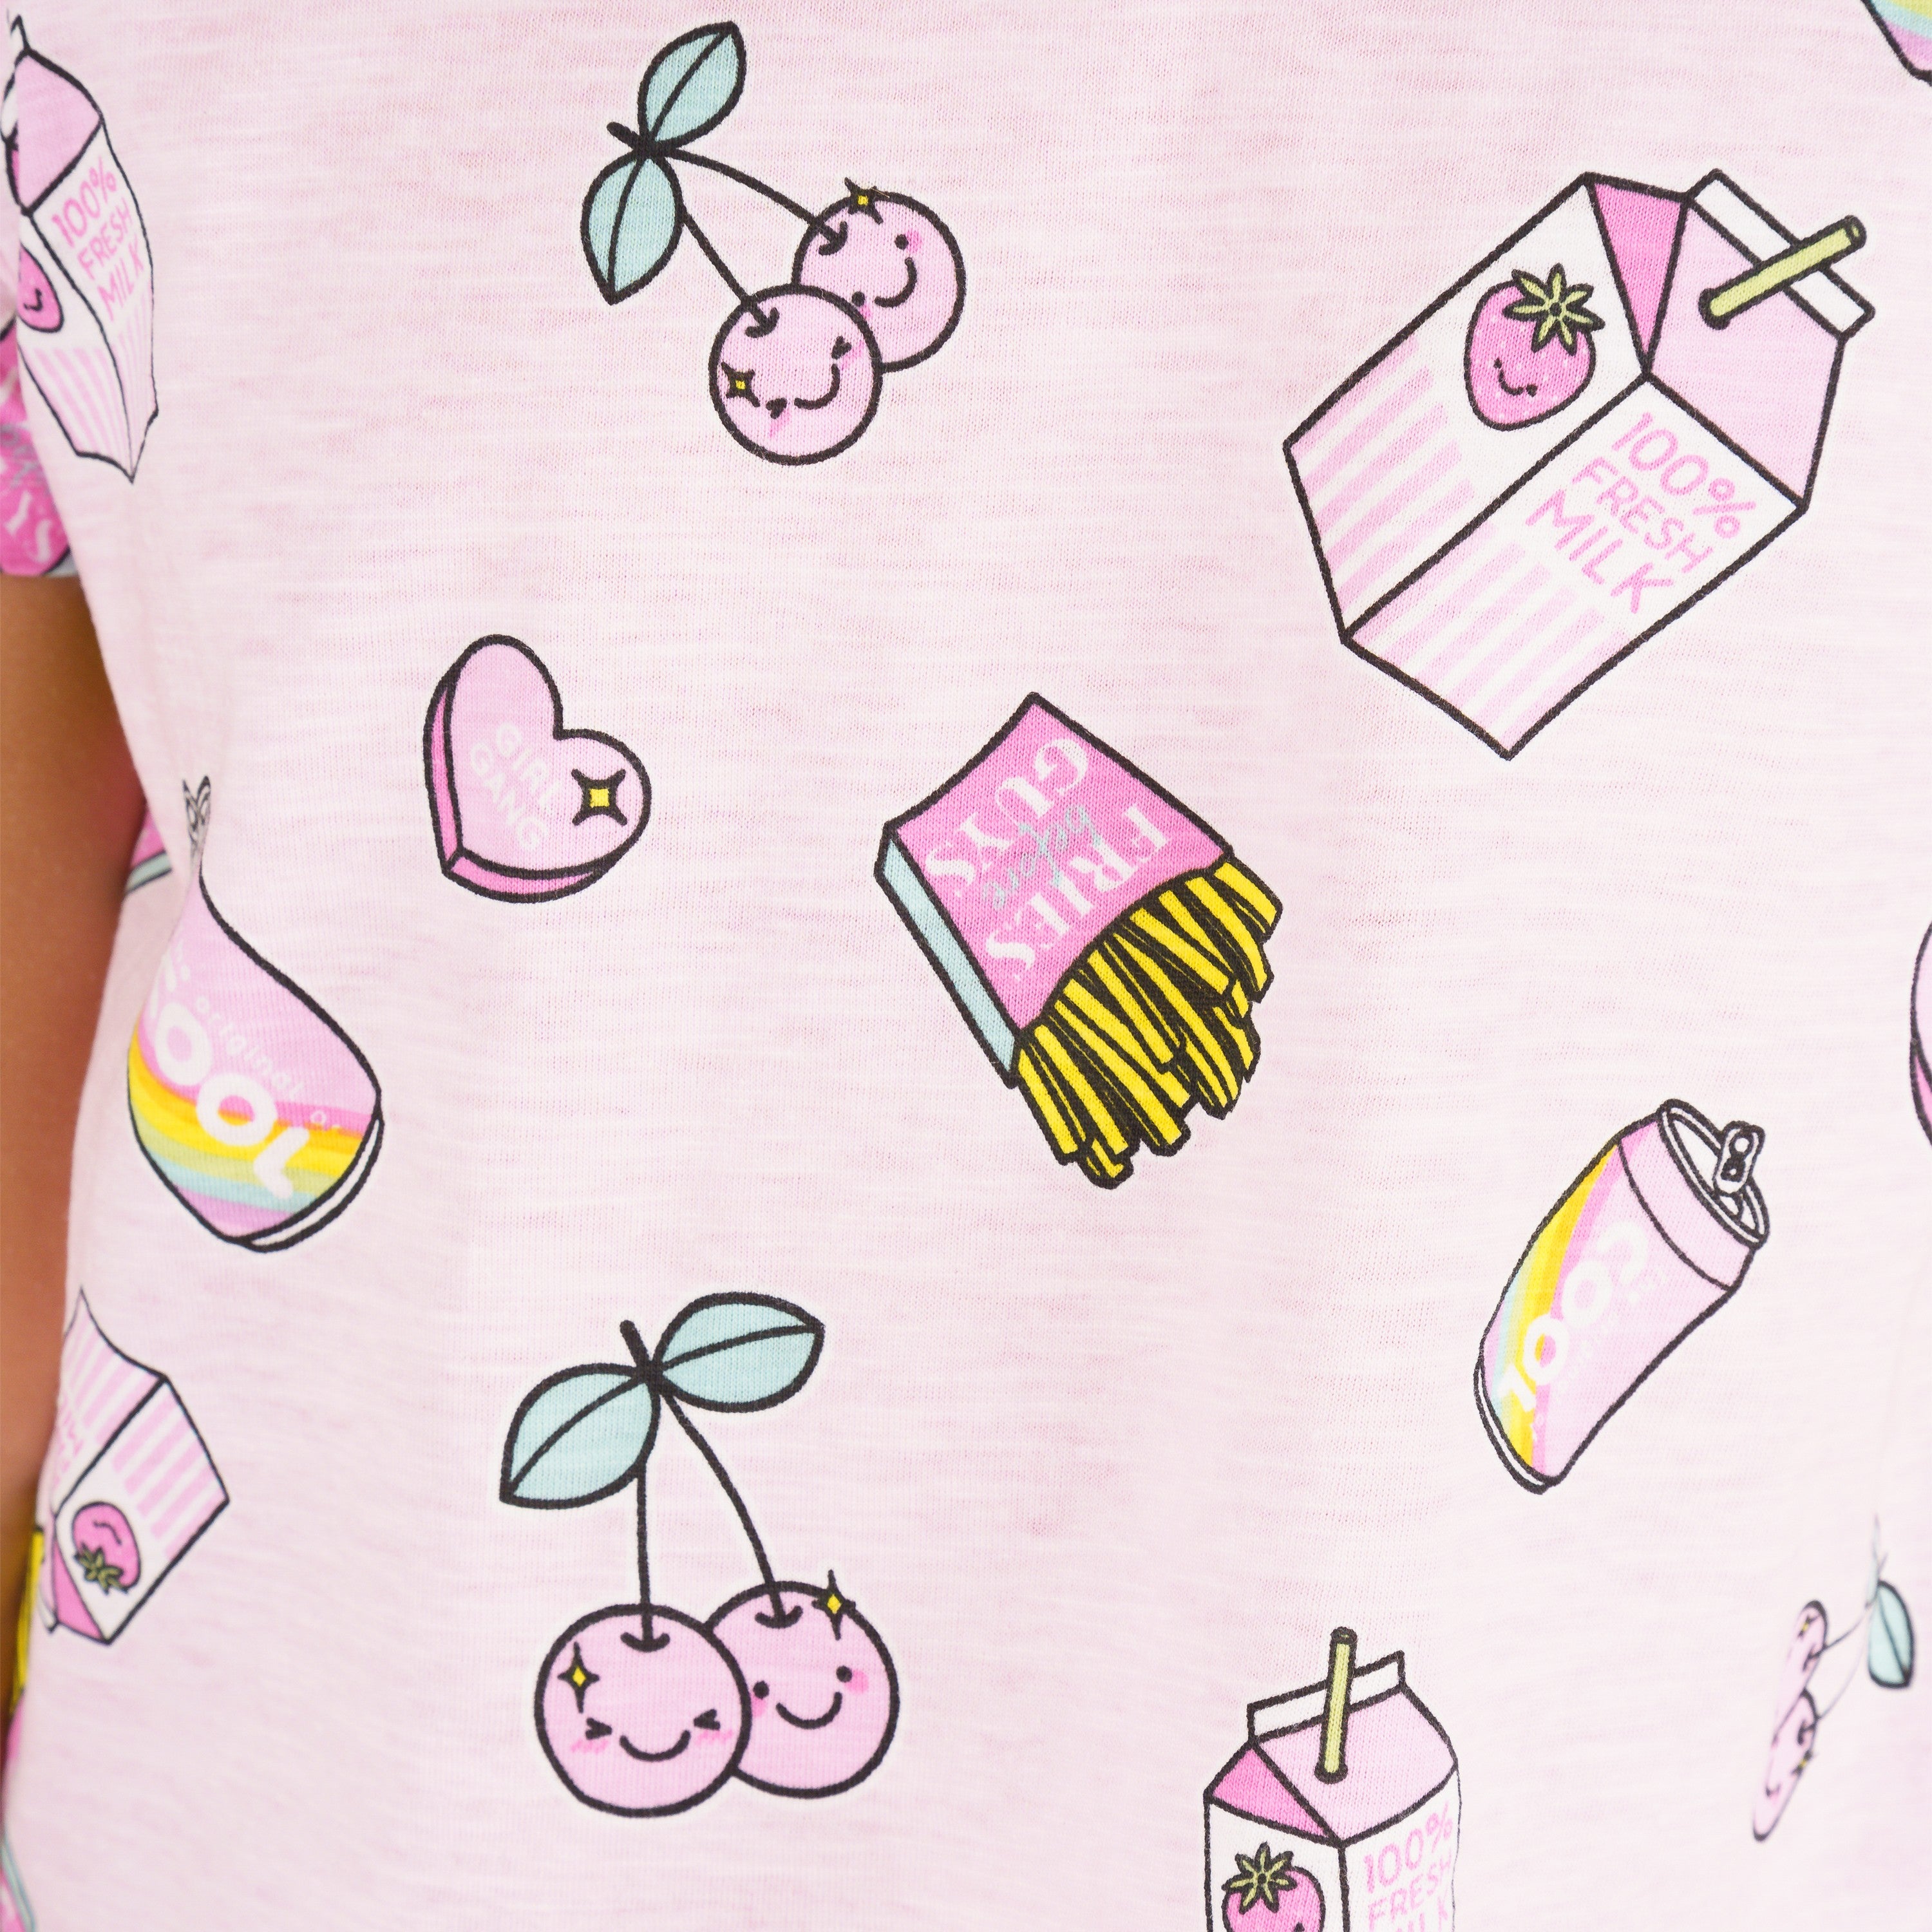 Camiseta de niña rosa VERANO/Outlet